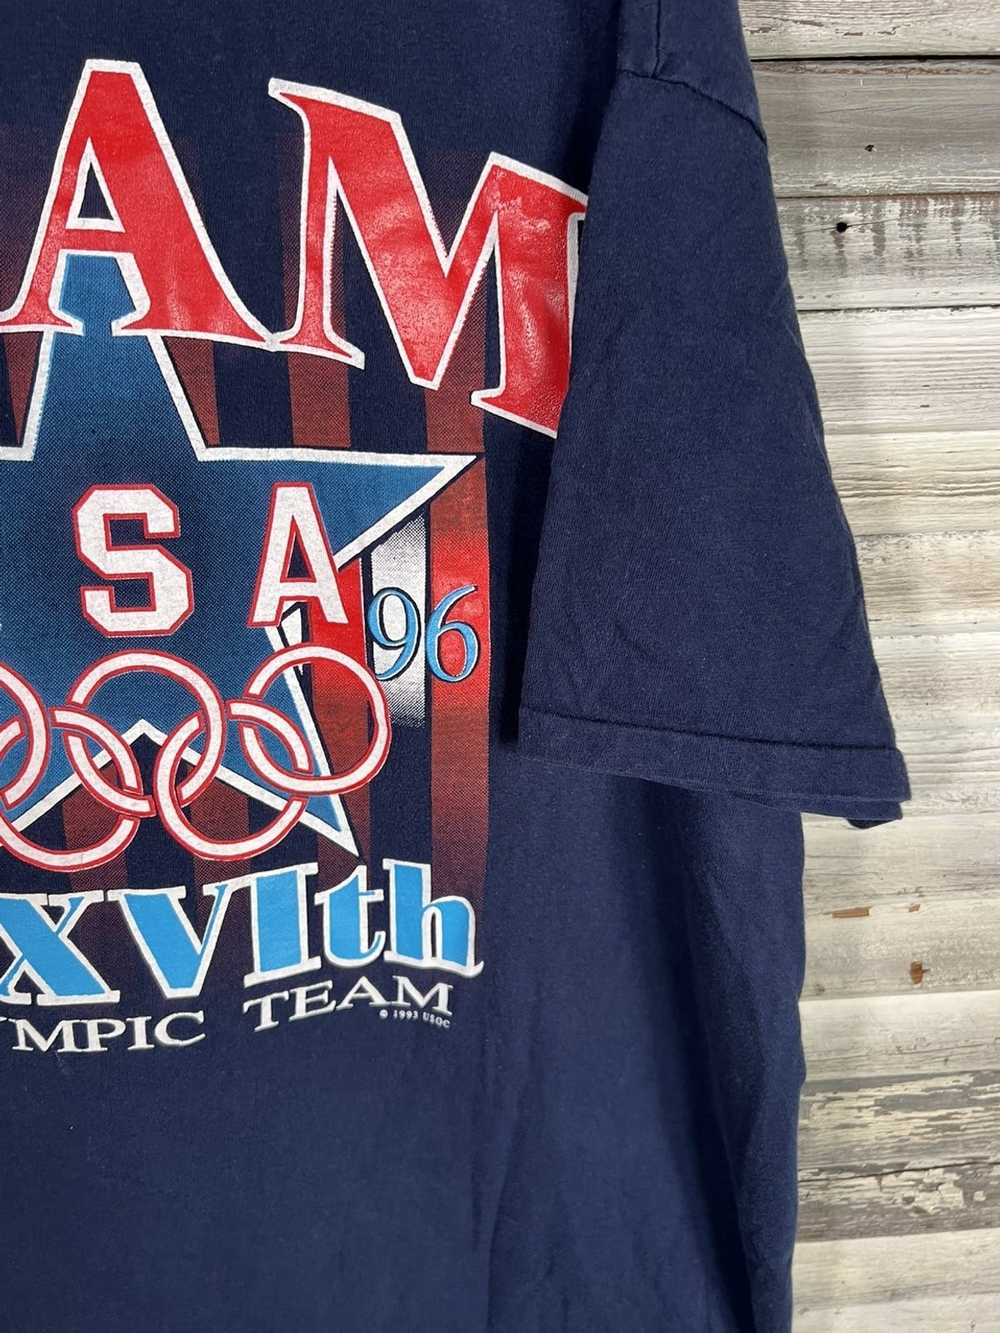 Vintage Vintage 1996 Olympics Shirt - image 4